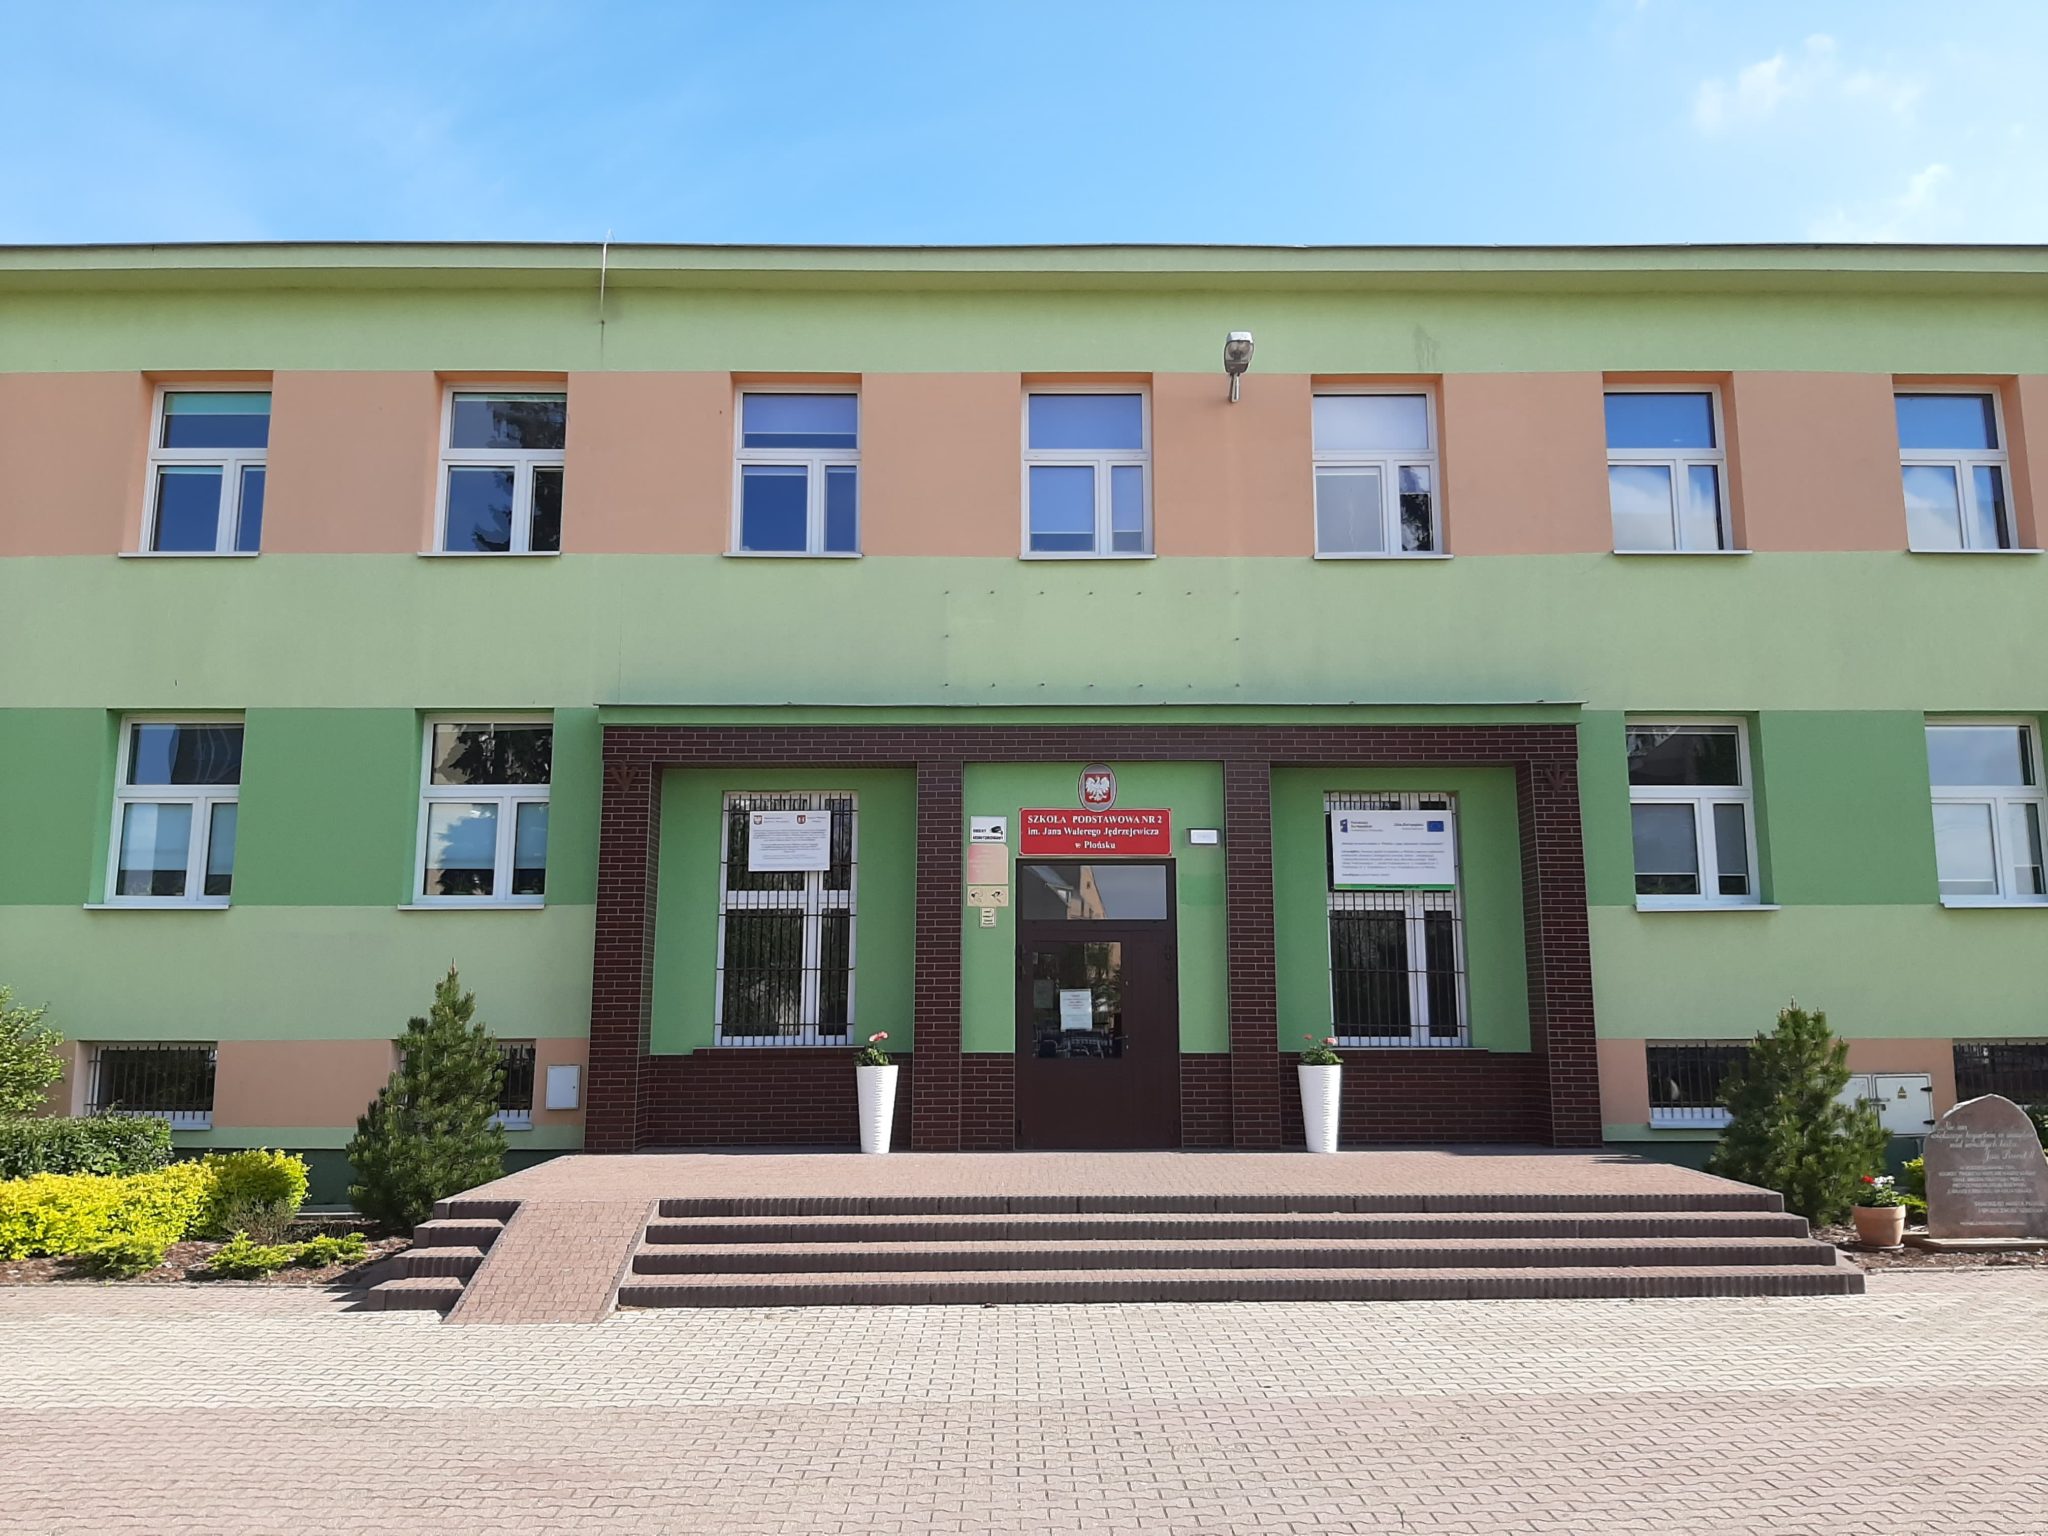 Szkoła Podstawowa Nr 2 Luzino Historia szkoły – Szkoła Podstawowa nr 2 w Płońsku